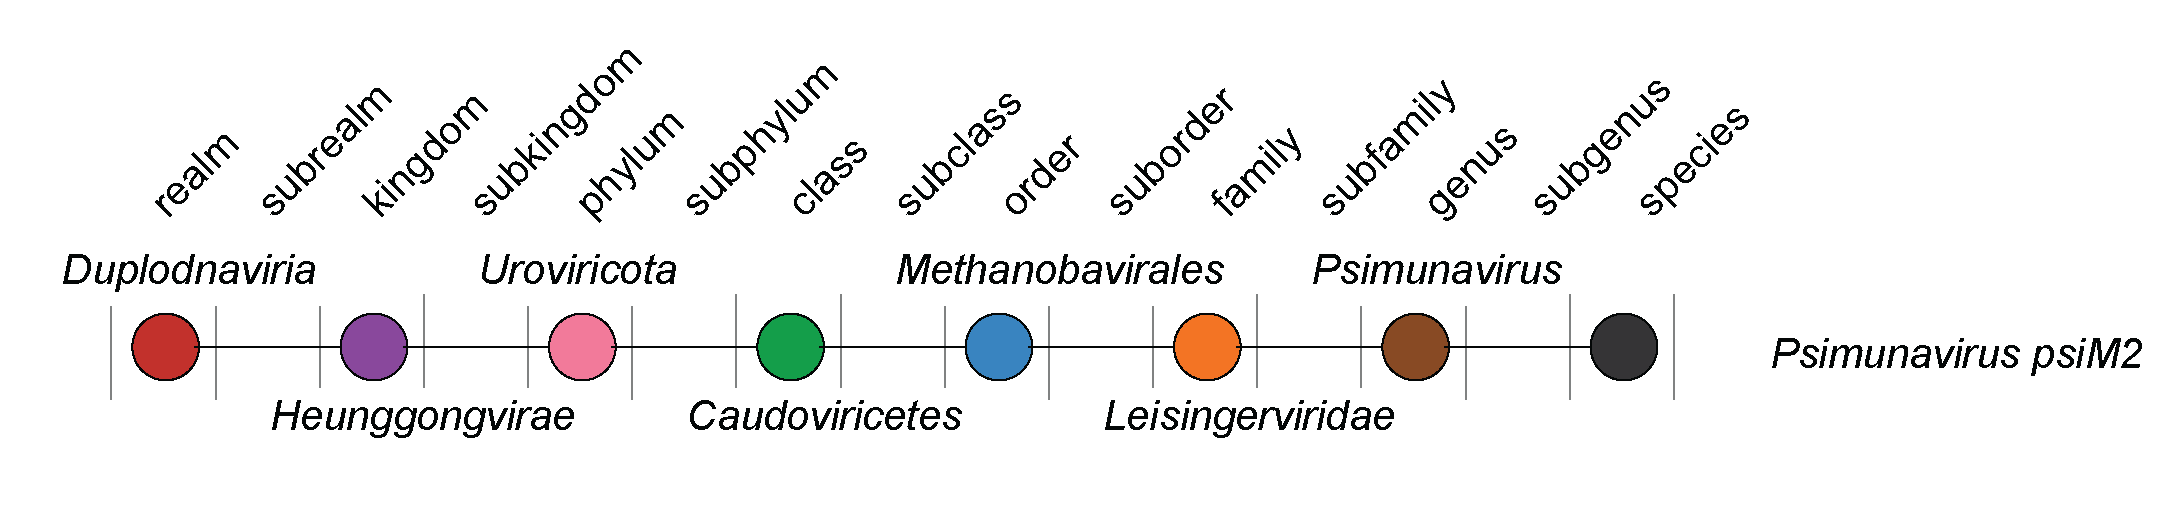 Leisingerviridae taxonomy